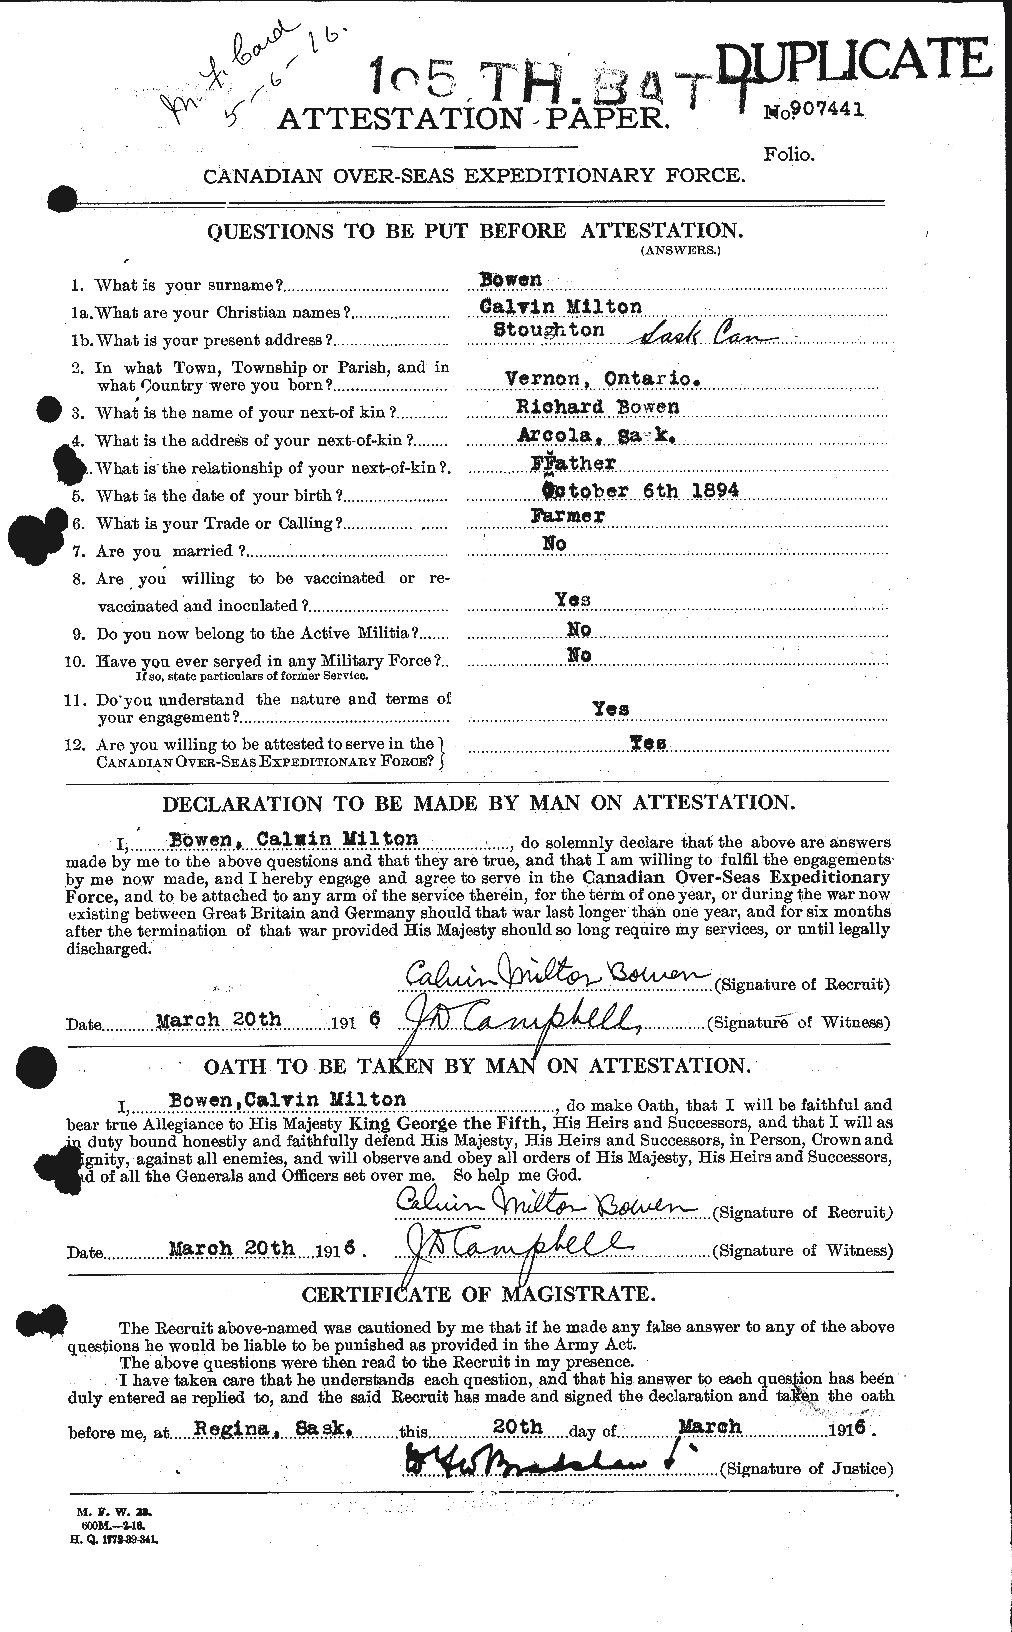 Dossiers du Personnel de la Première Guerre mondiale - CEC 255360a